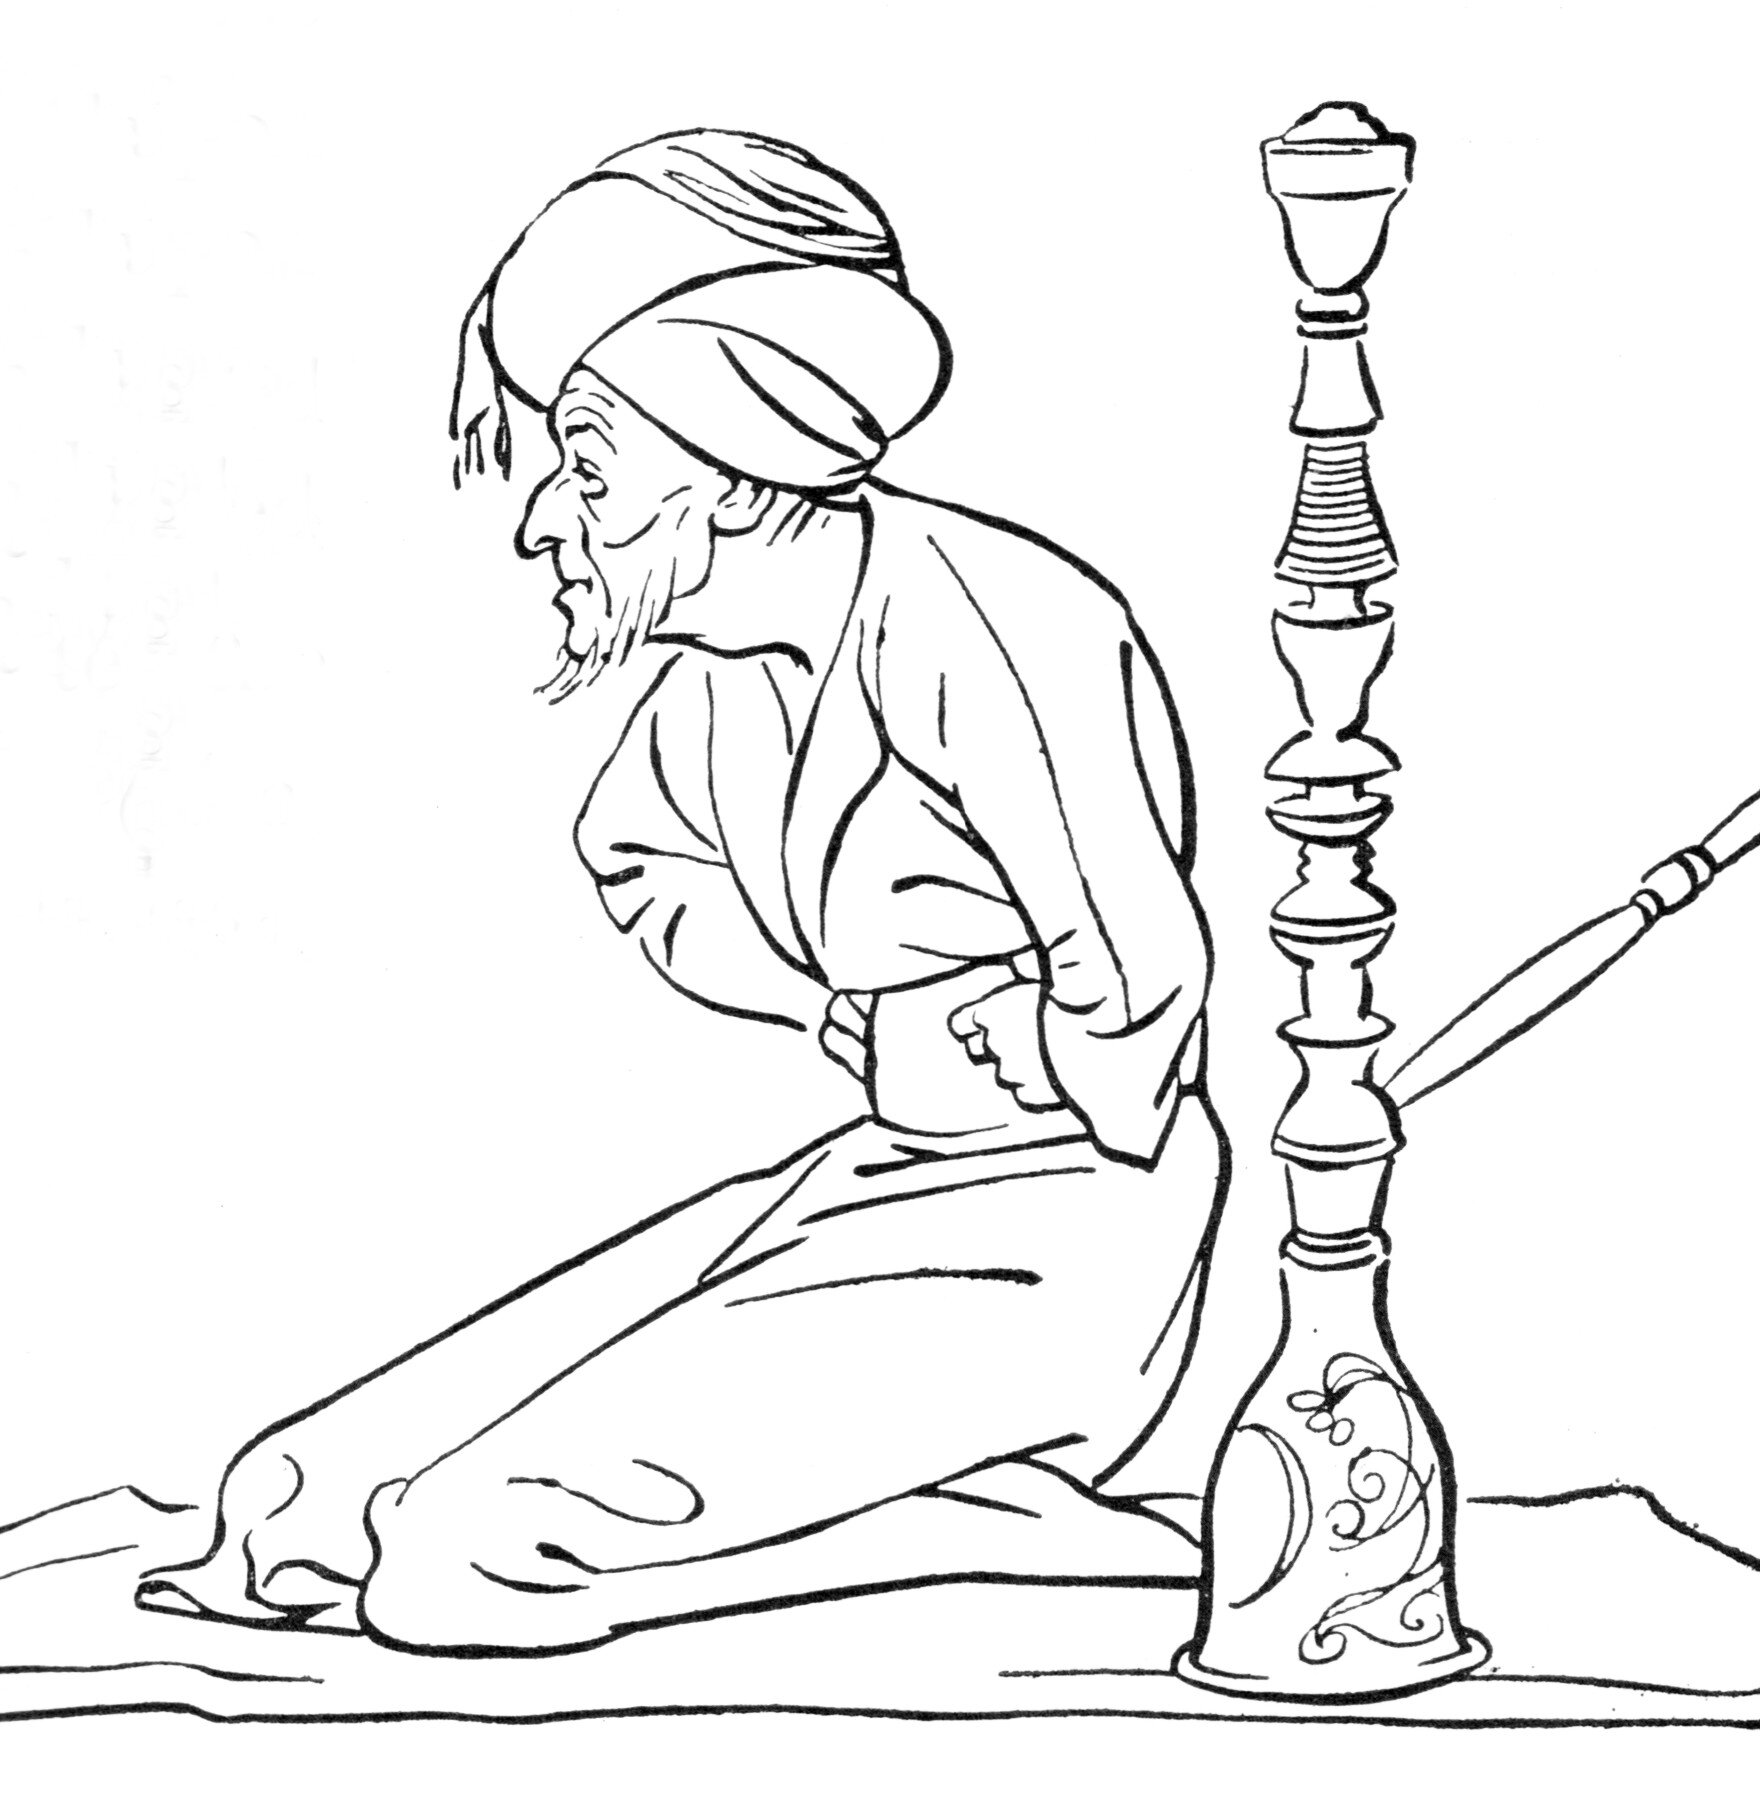 Hajji-Baba-ch-18-illustration_0.jpg